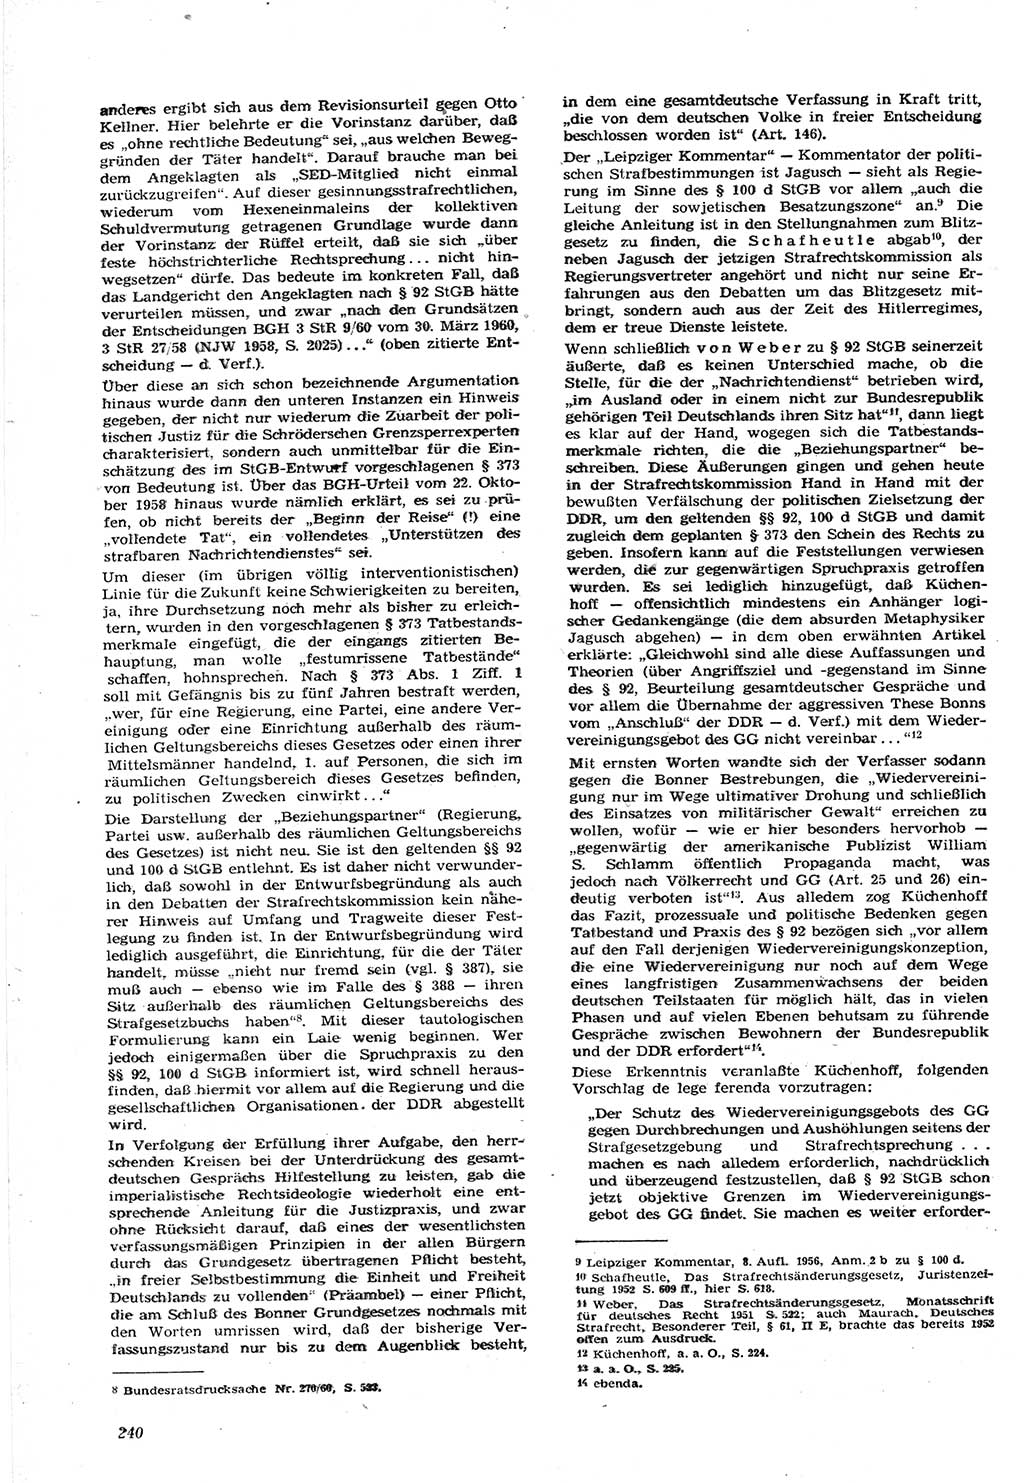 Neue Justiz (NJ), Zeitschrift für Recht und Rechtswissenschaft [Deutsche Demokratische Republik (DDR)], 15. Jahrgang 1961, Seite 240 (NJ DDR 1961, S. 240)